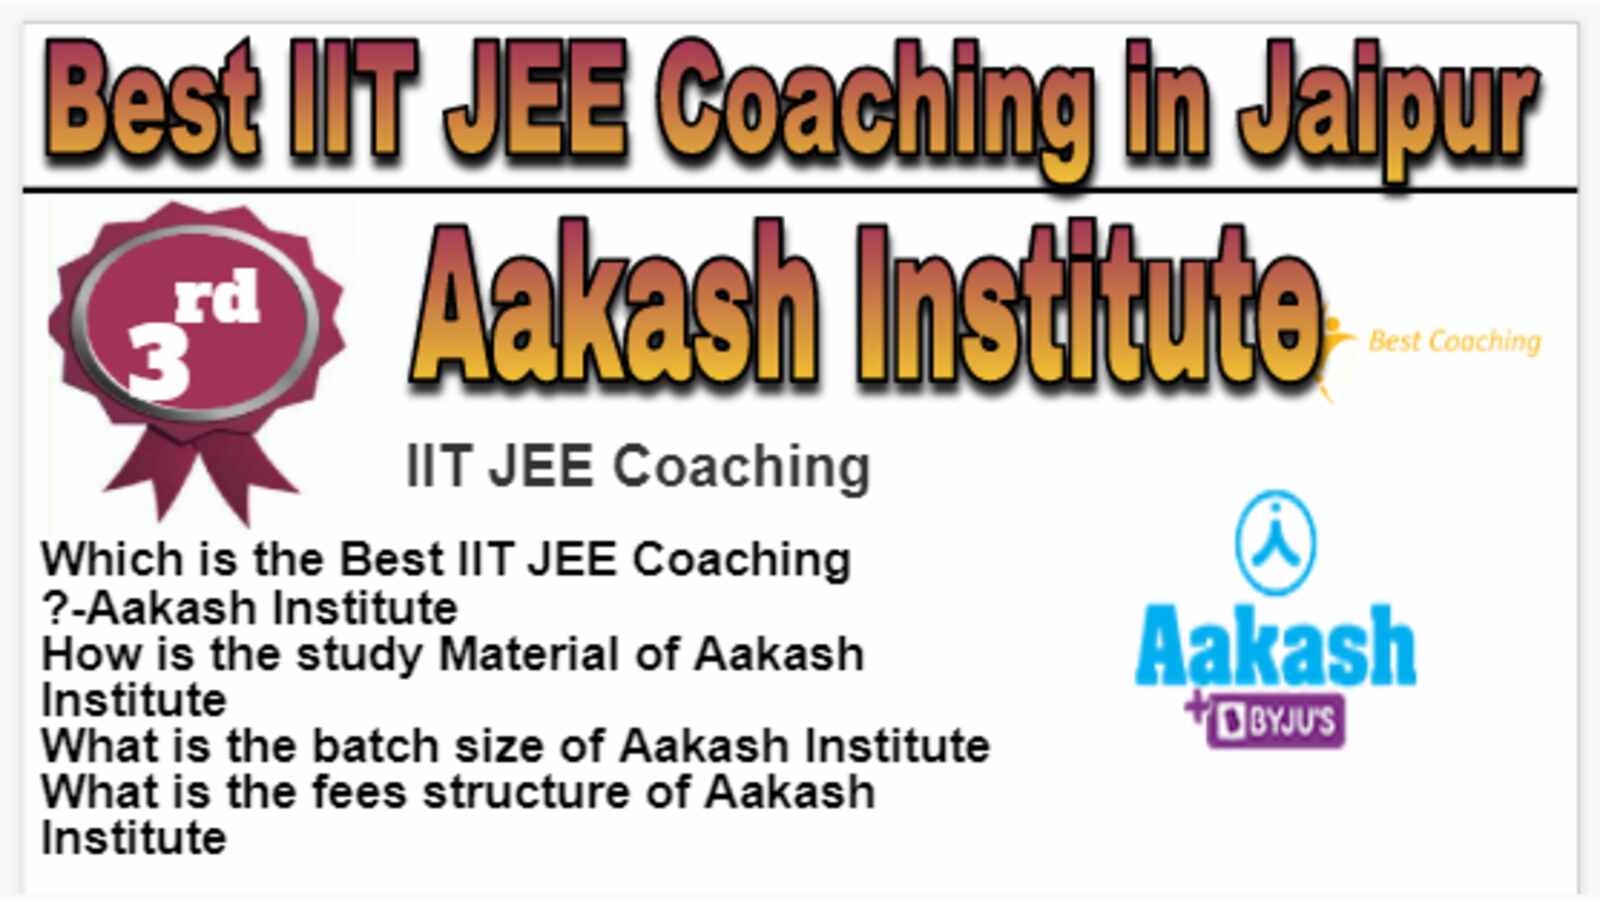 Rank 3 Best IIT JEE Coaching in Jaipur